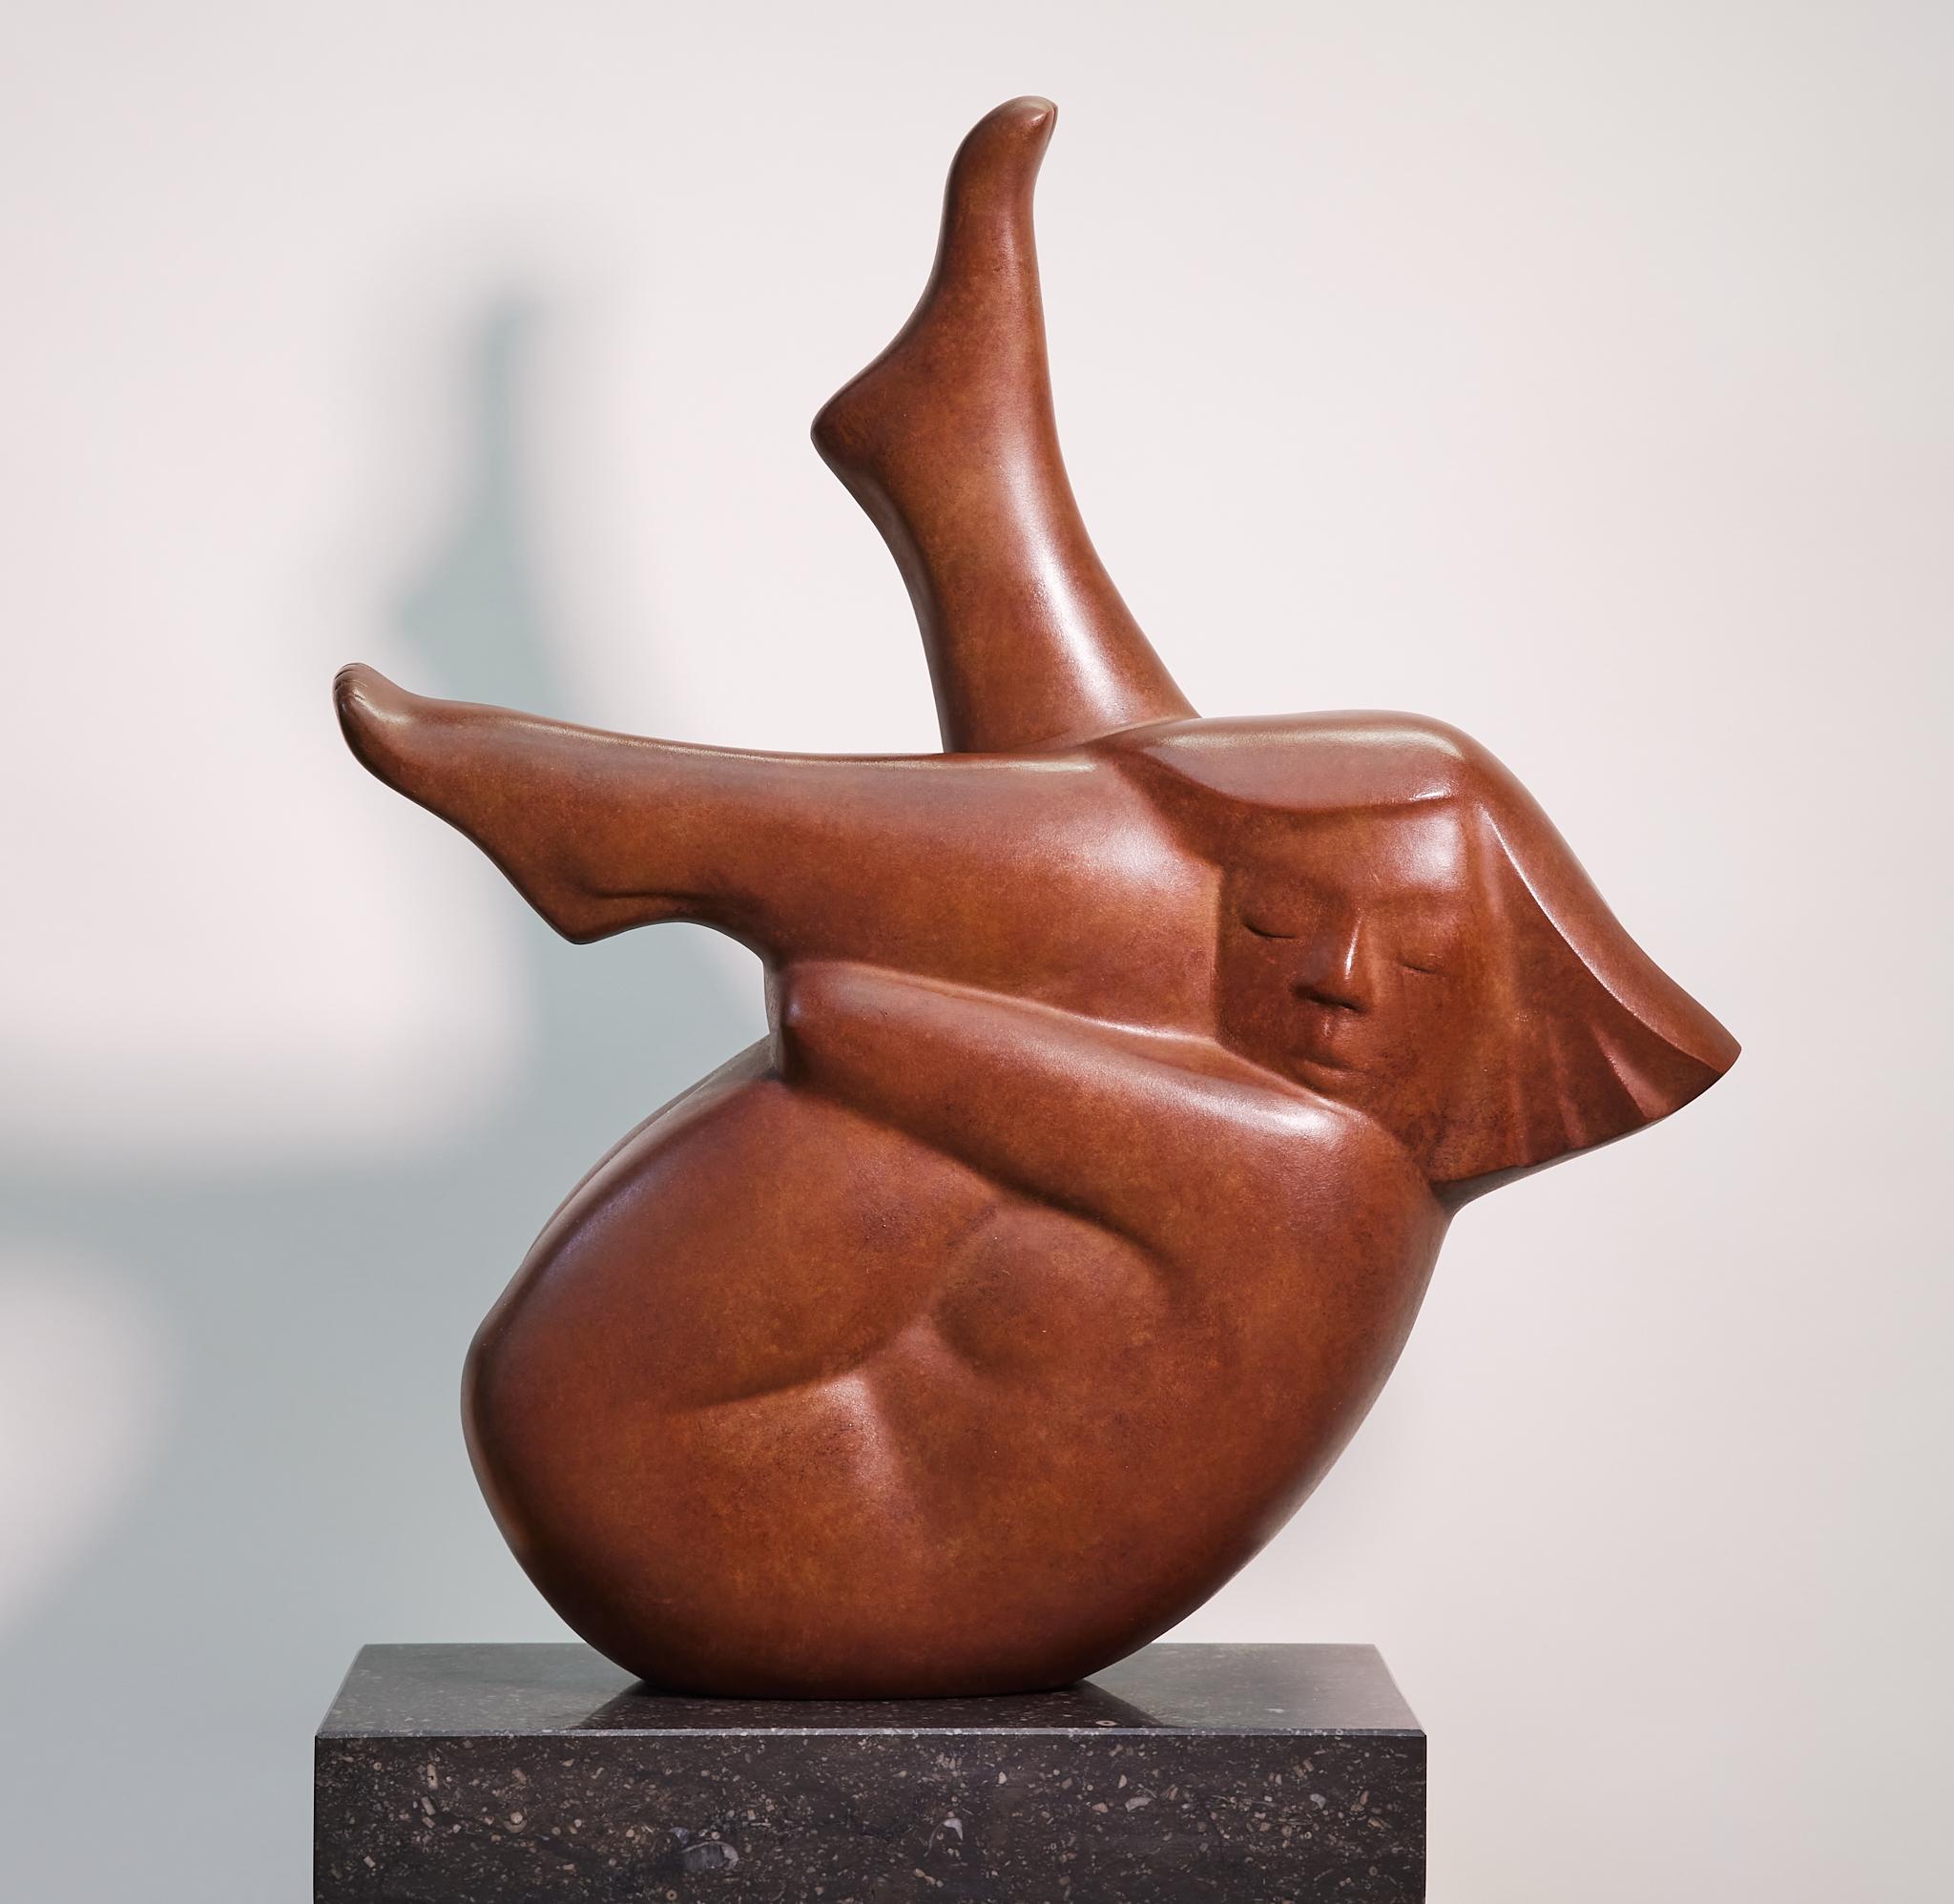 Evert den Hartog Figurative Sculpture – Liggend Meisje, Daunen liegendes Mädchen, Bronzeskulptur, limitierte Auflage